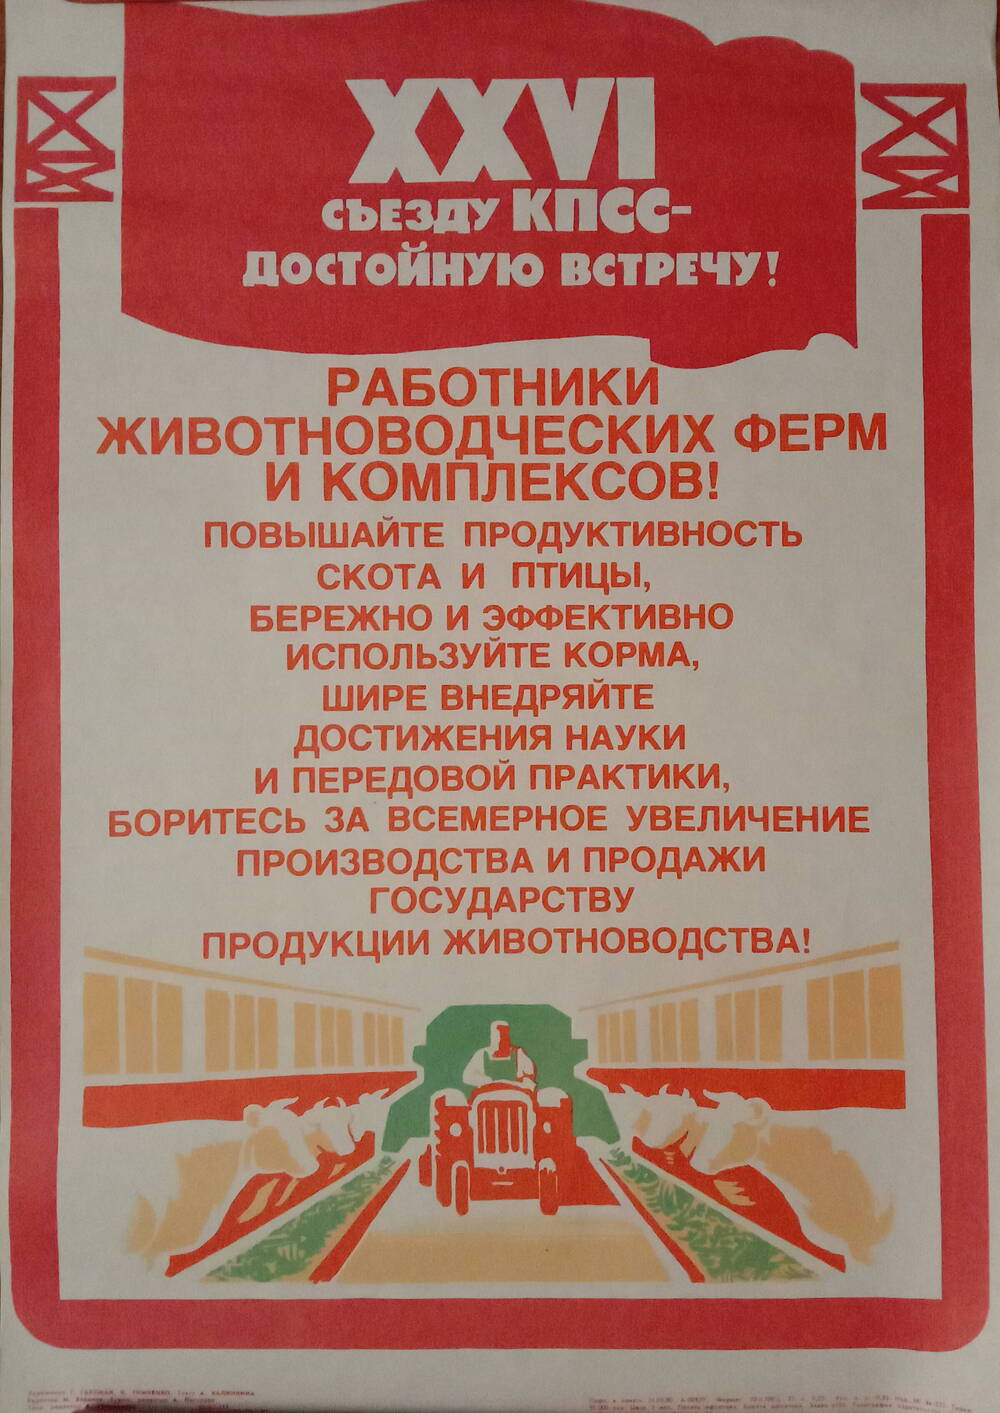 Плакат
«XXVI съезду КПСС - достойную встречу!
Работники животноводческих ферм и комплексов!»